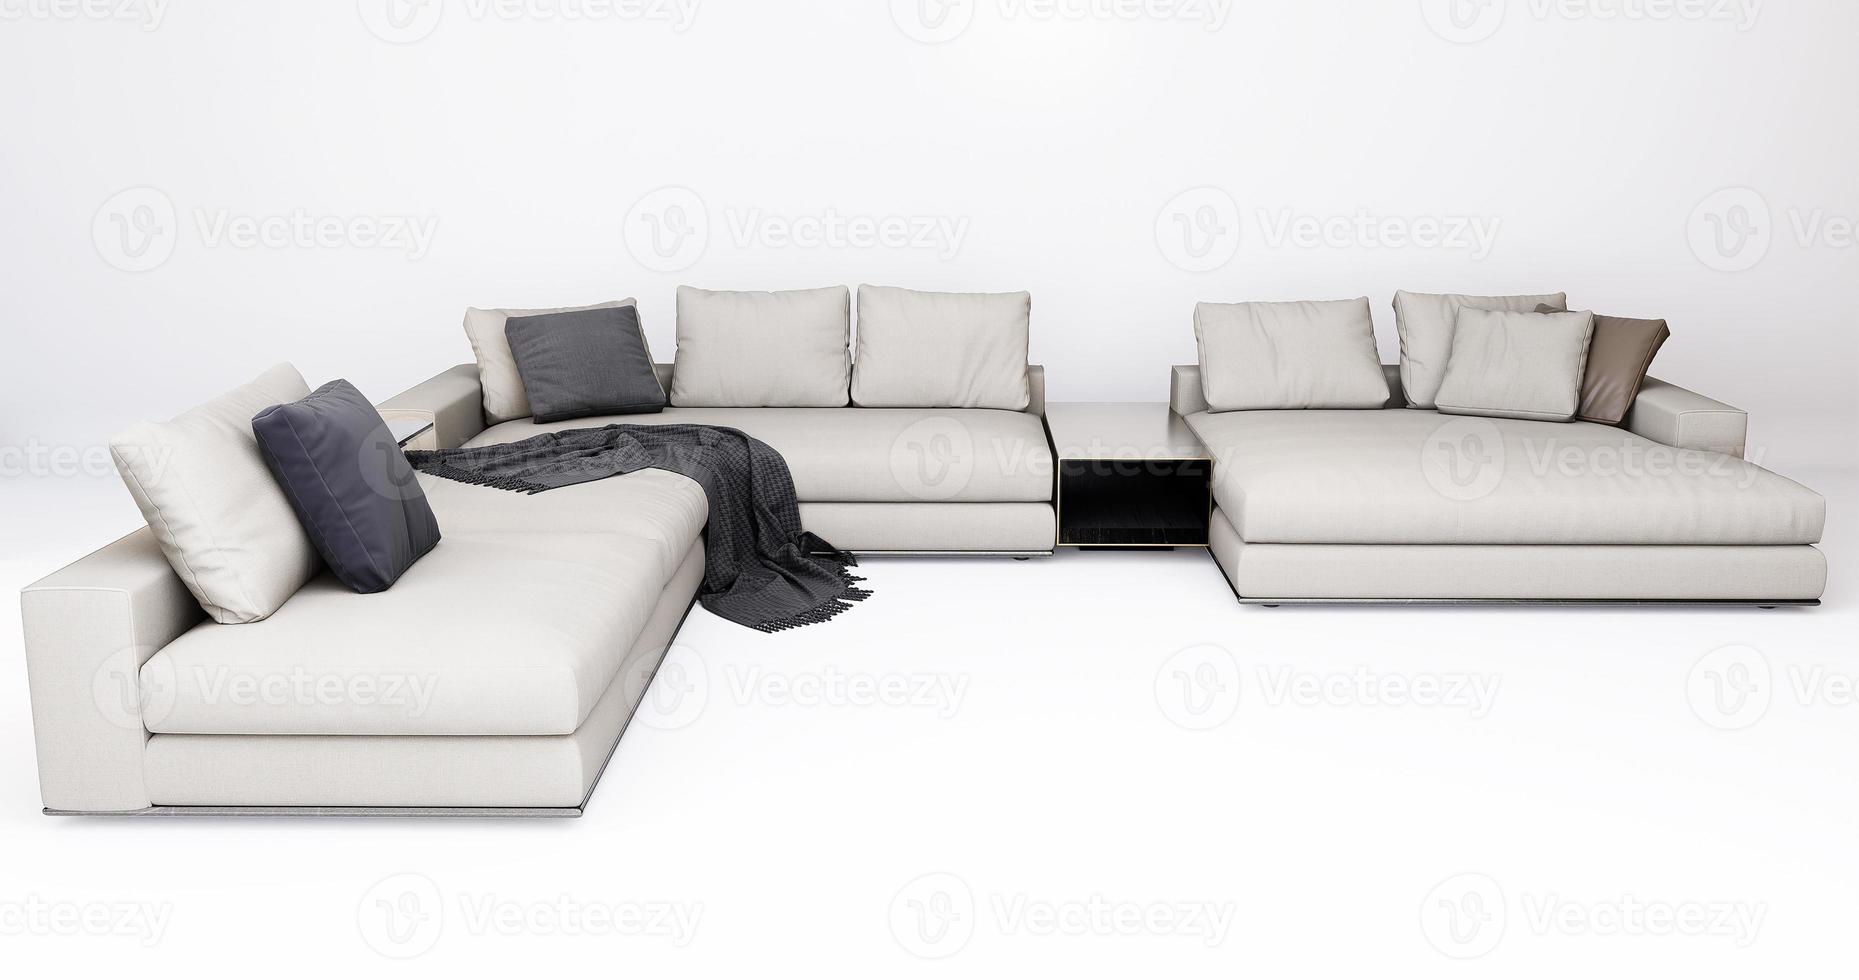 Móveis 3D moderno tecido canto multi-assento isolado em um fundo branco com traçado de recorte, design de decoração para sala de estar foto